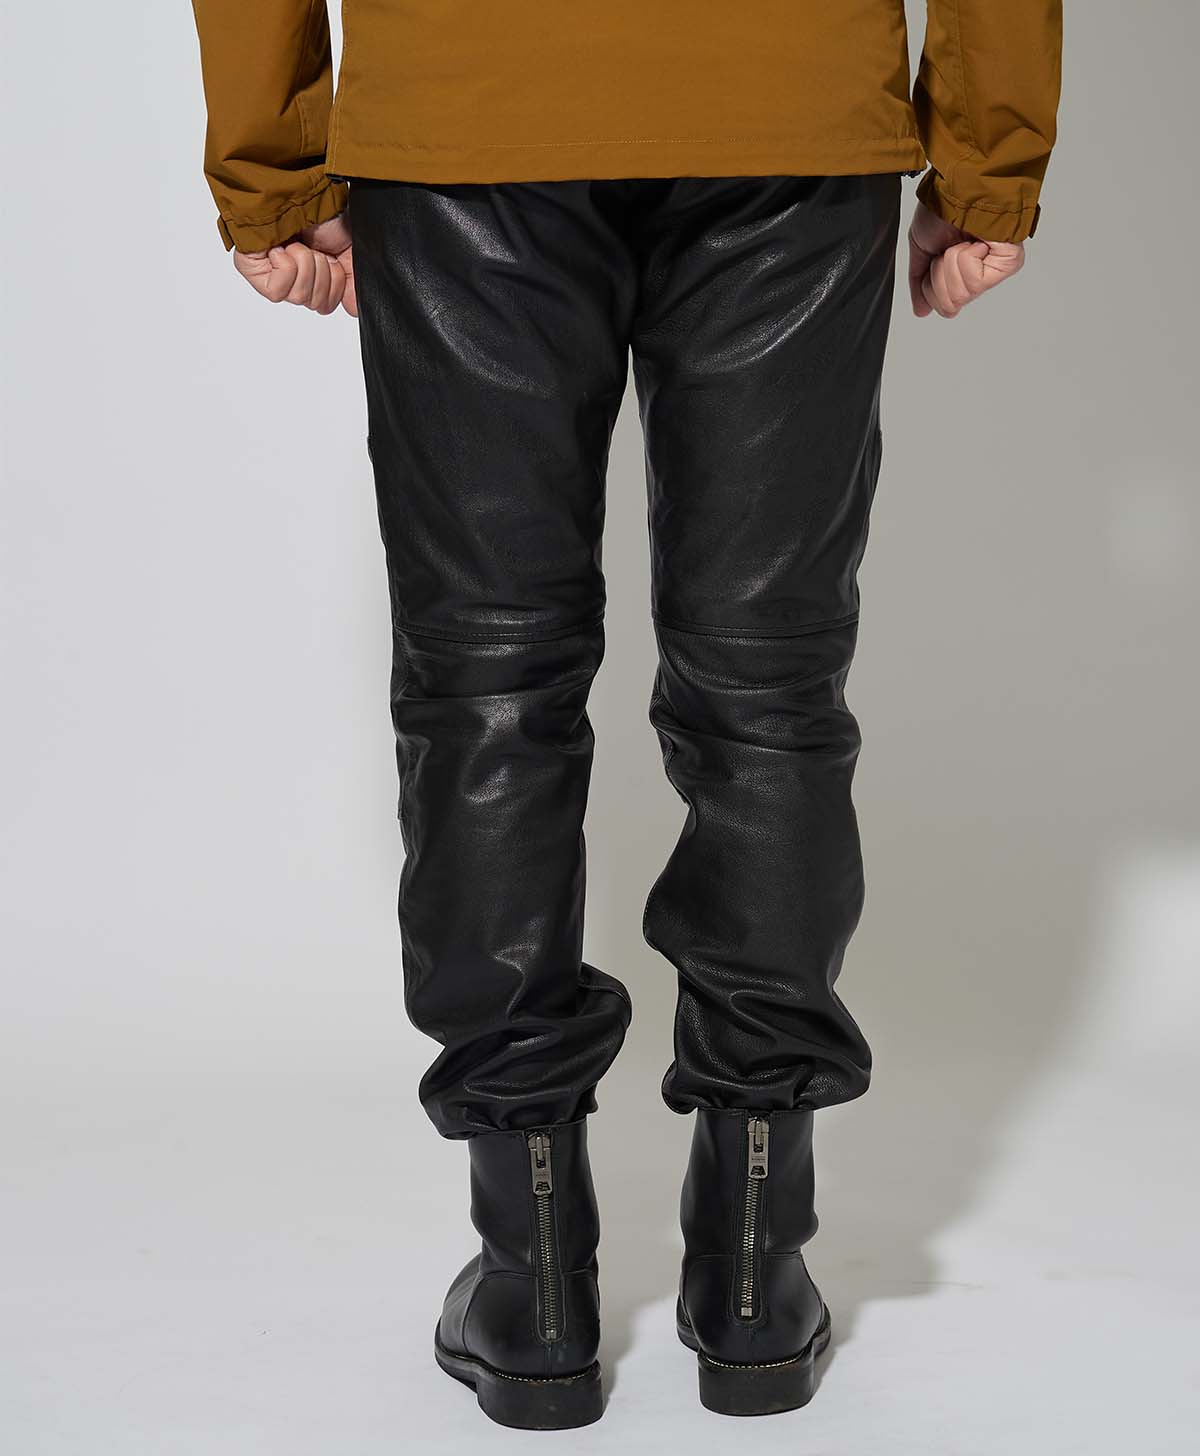 KADOYA Leather Pants Black Size 35 